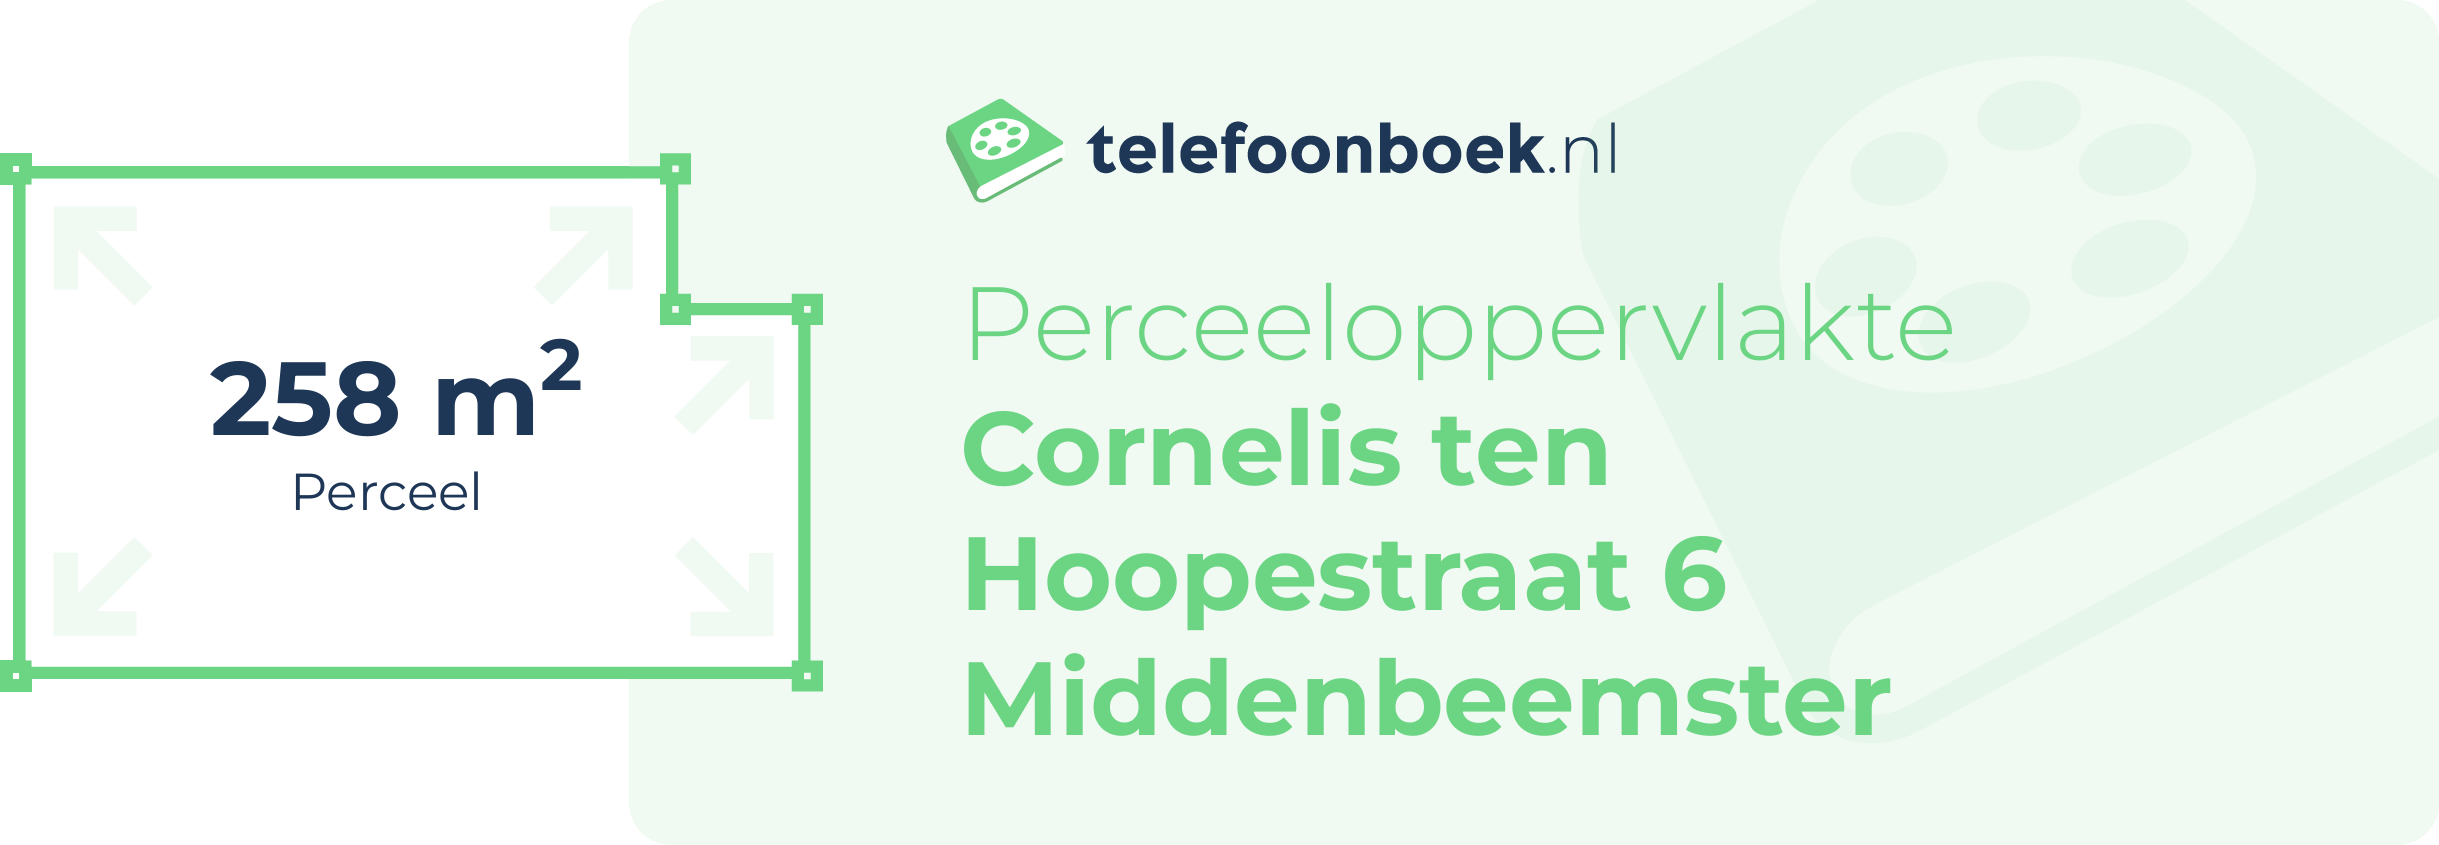 Perceeloppervlakte Cornelis Ten Hoopestraat 6 Middenbeemster